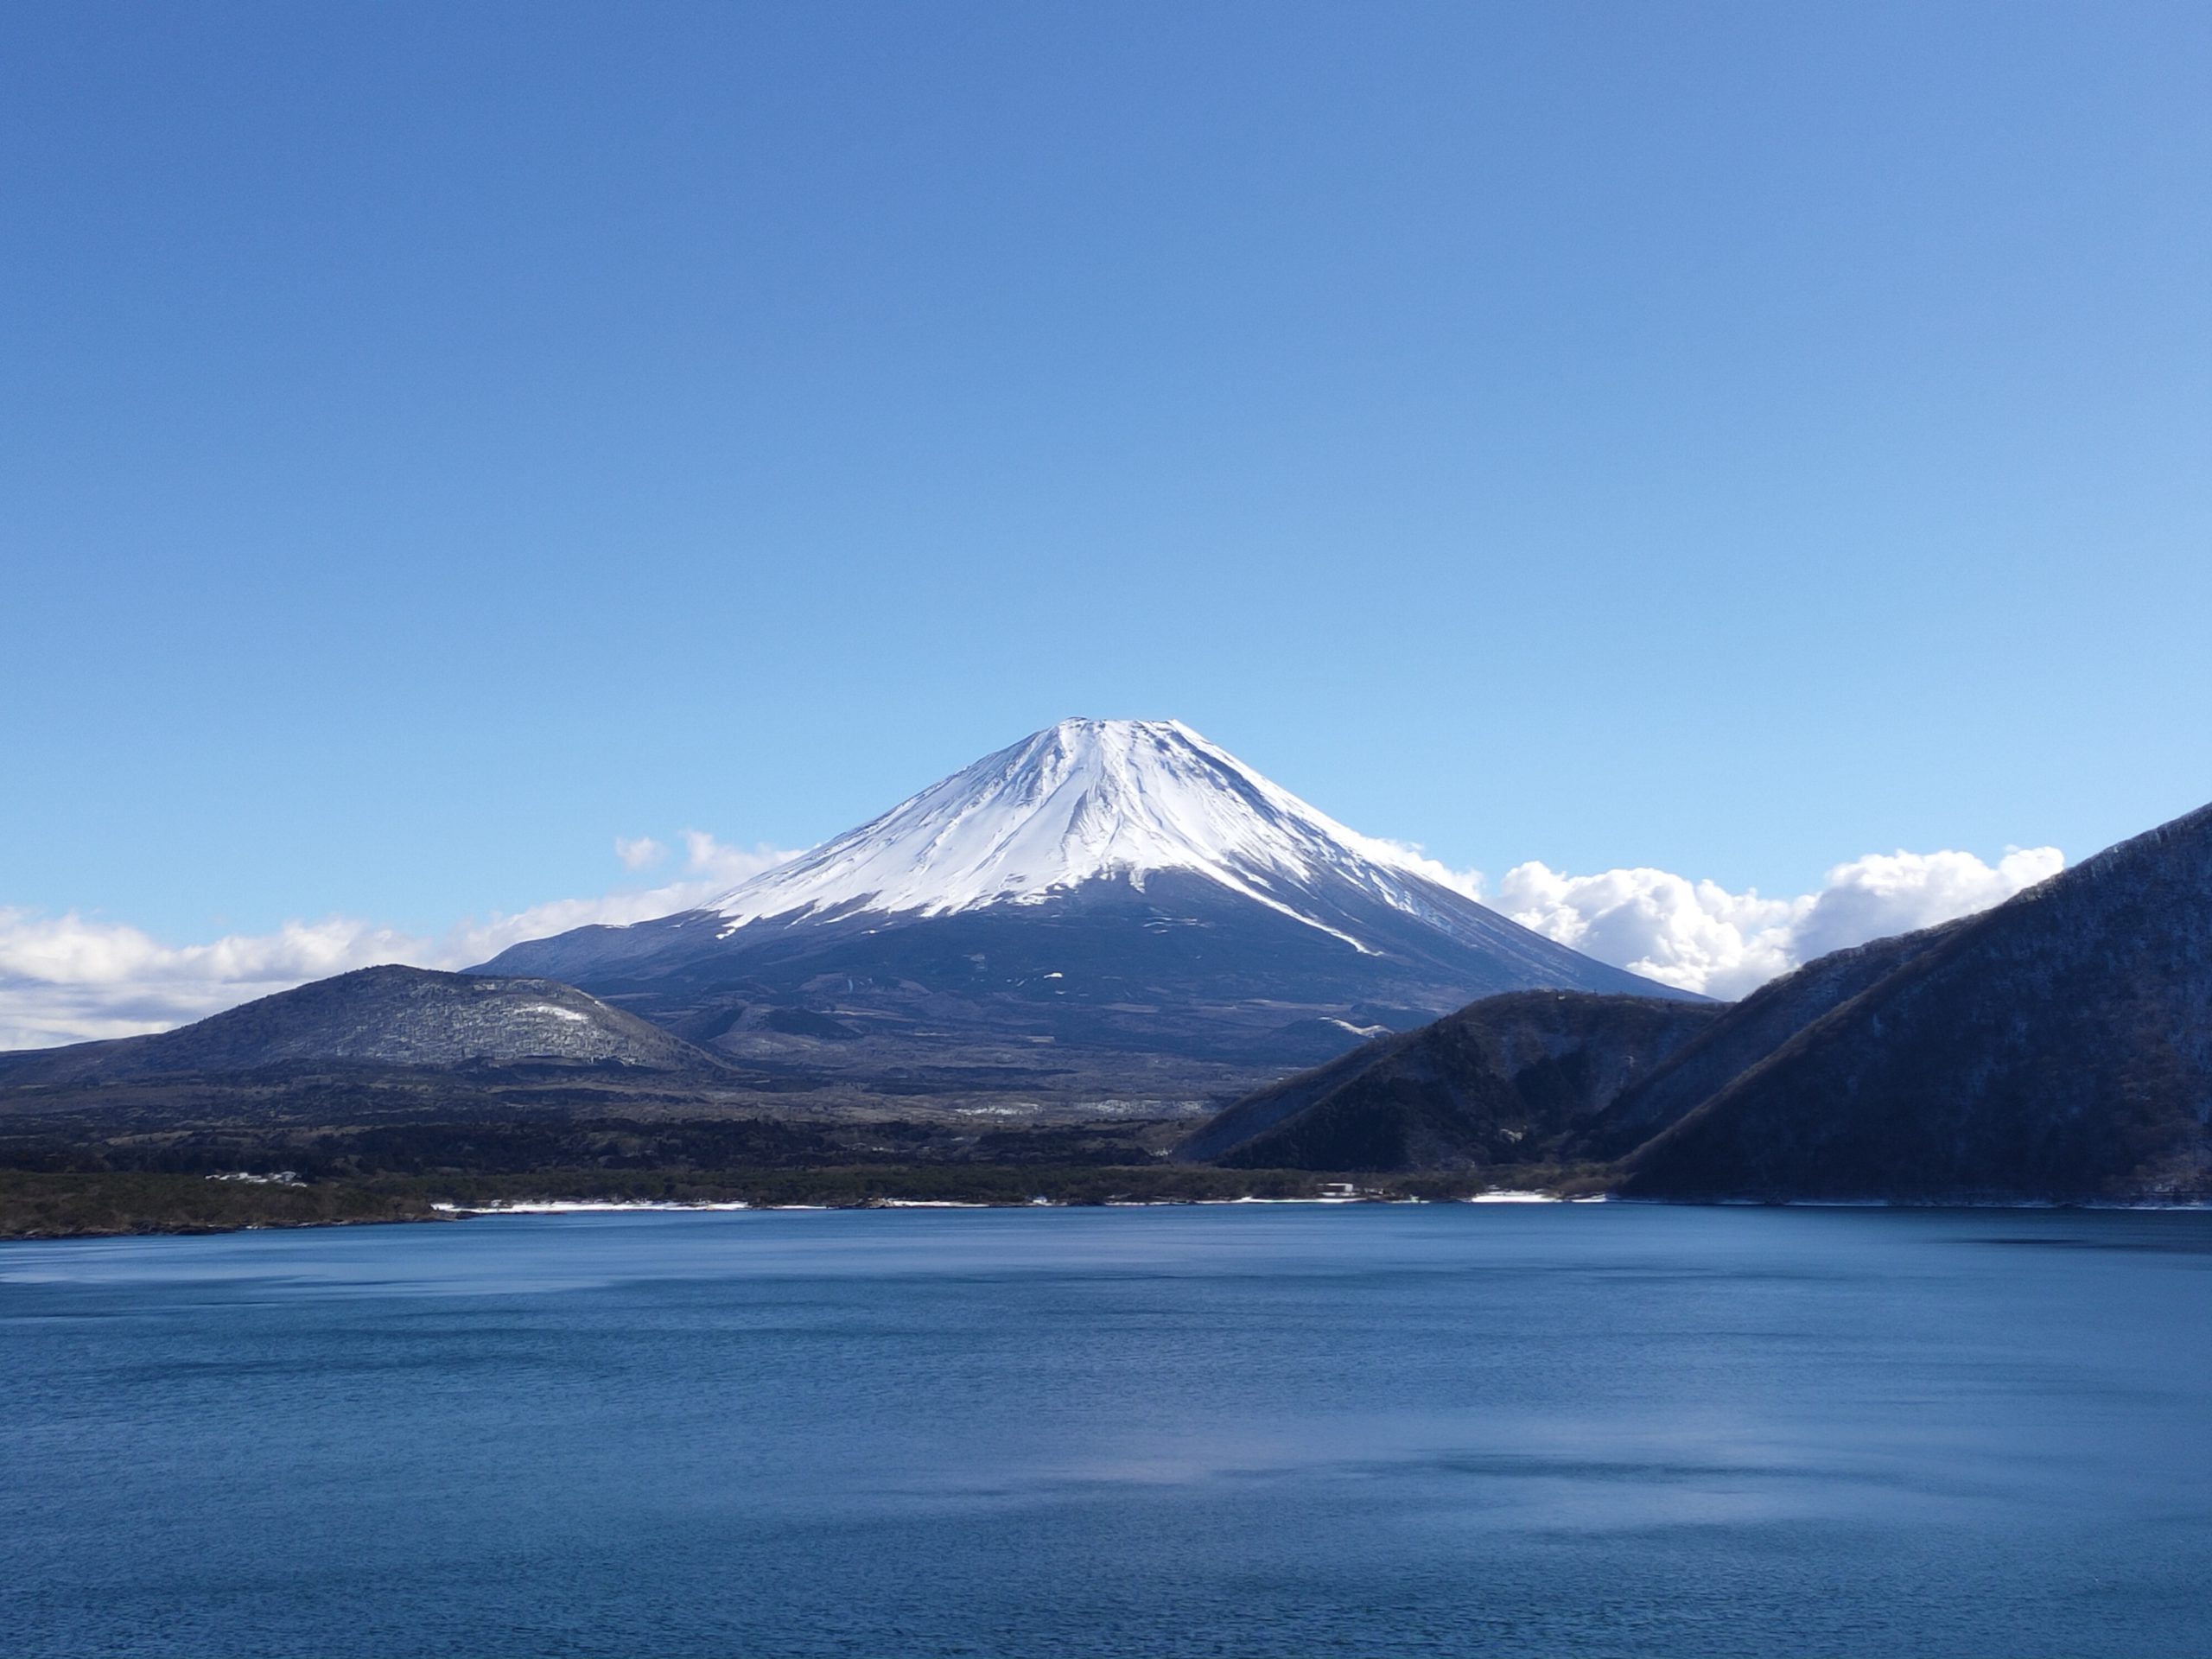 Lake Motosuko